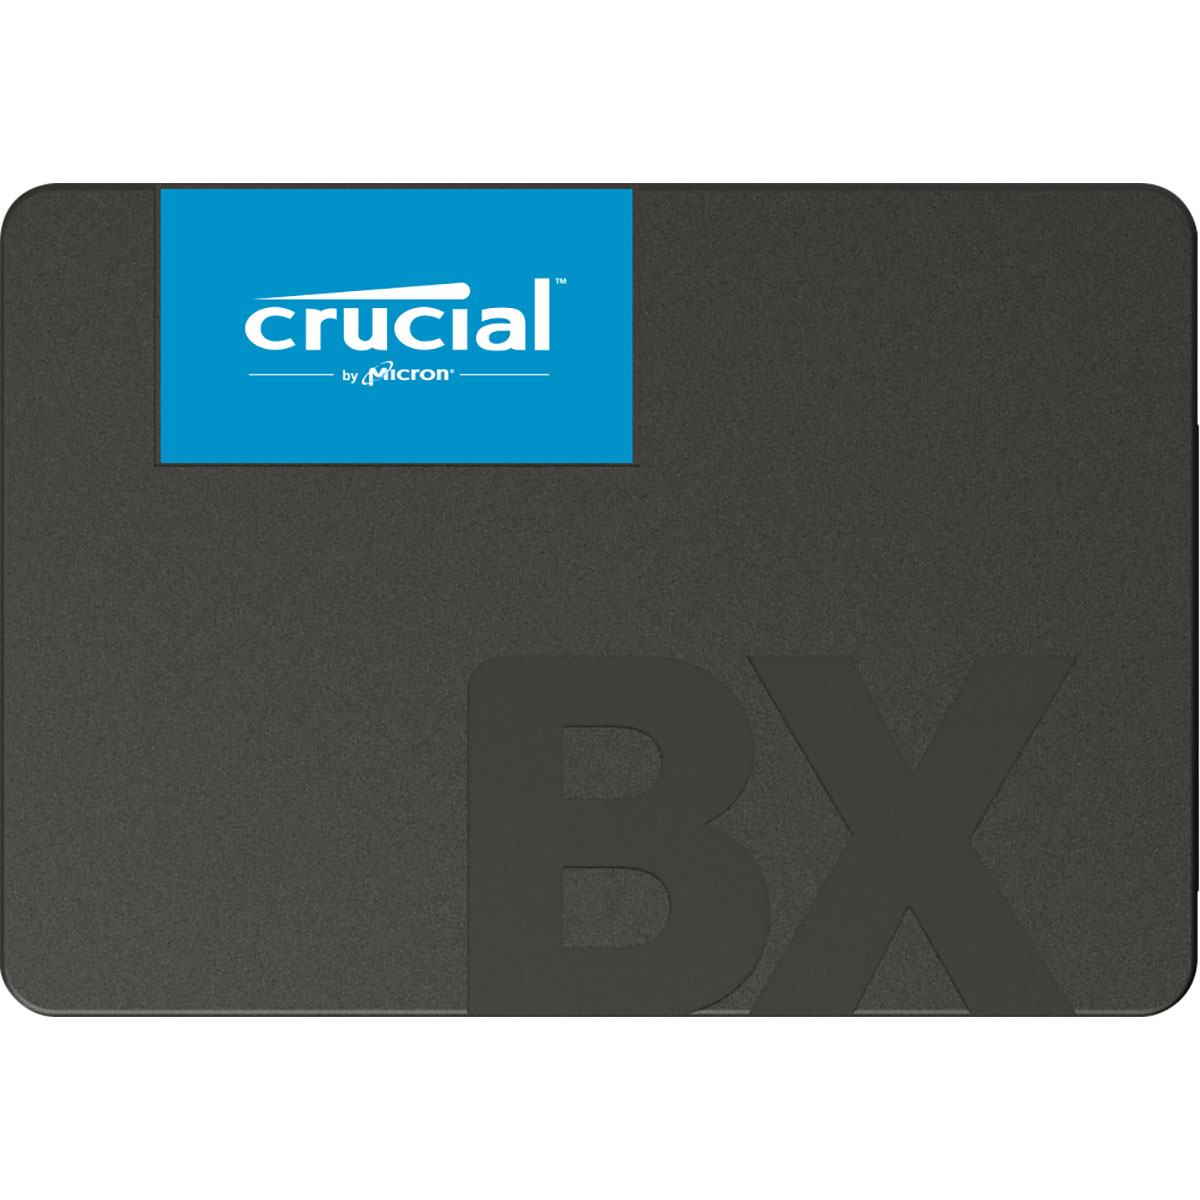 Disque dur SSD Crucial BX500 500 Go 2.5 pouces (7mm) Serial ATA 3 (6Gb/s)s, informatique ile de la Runion 974